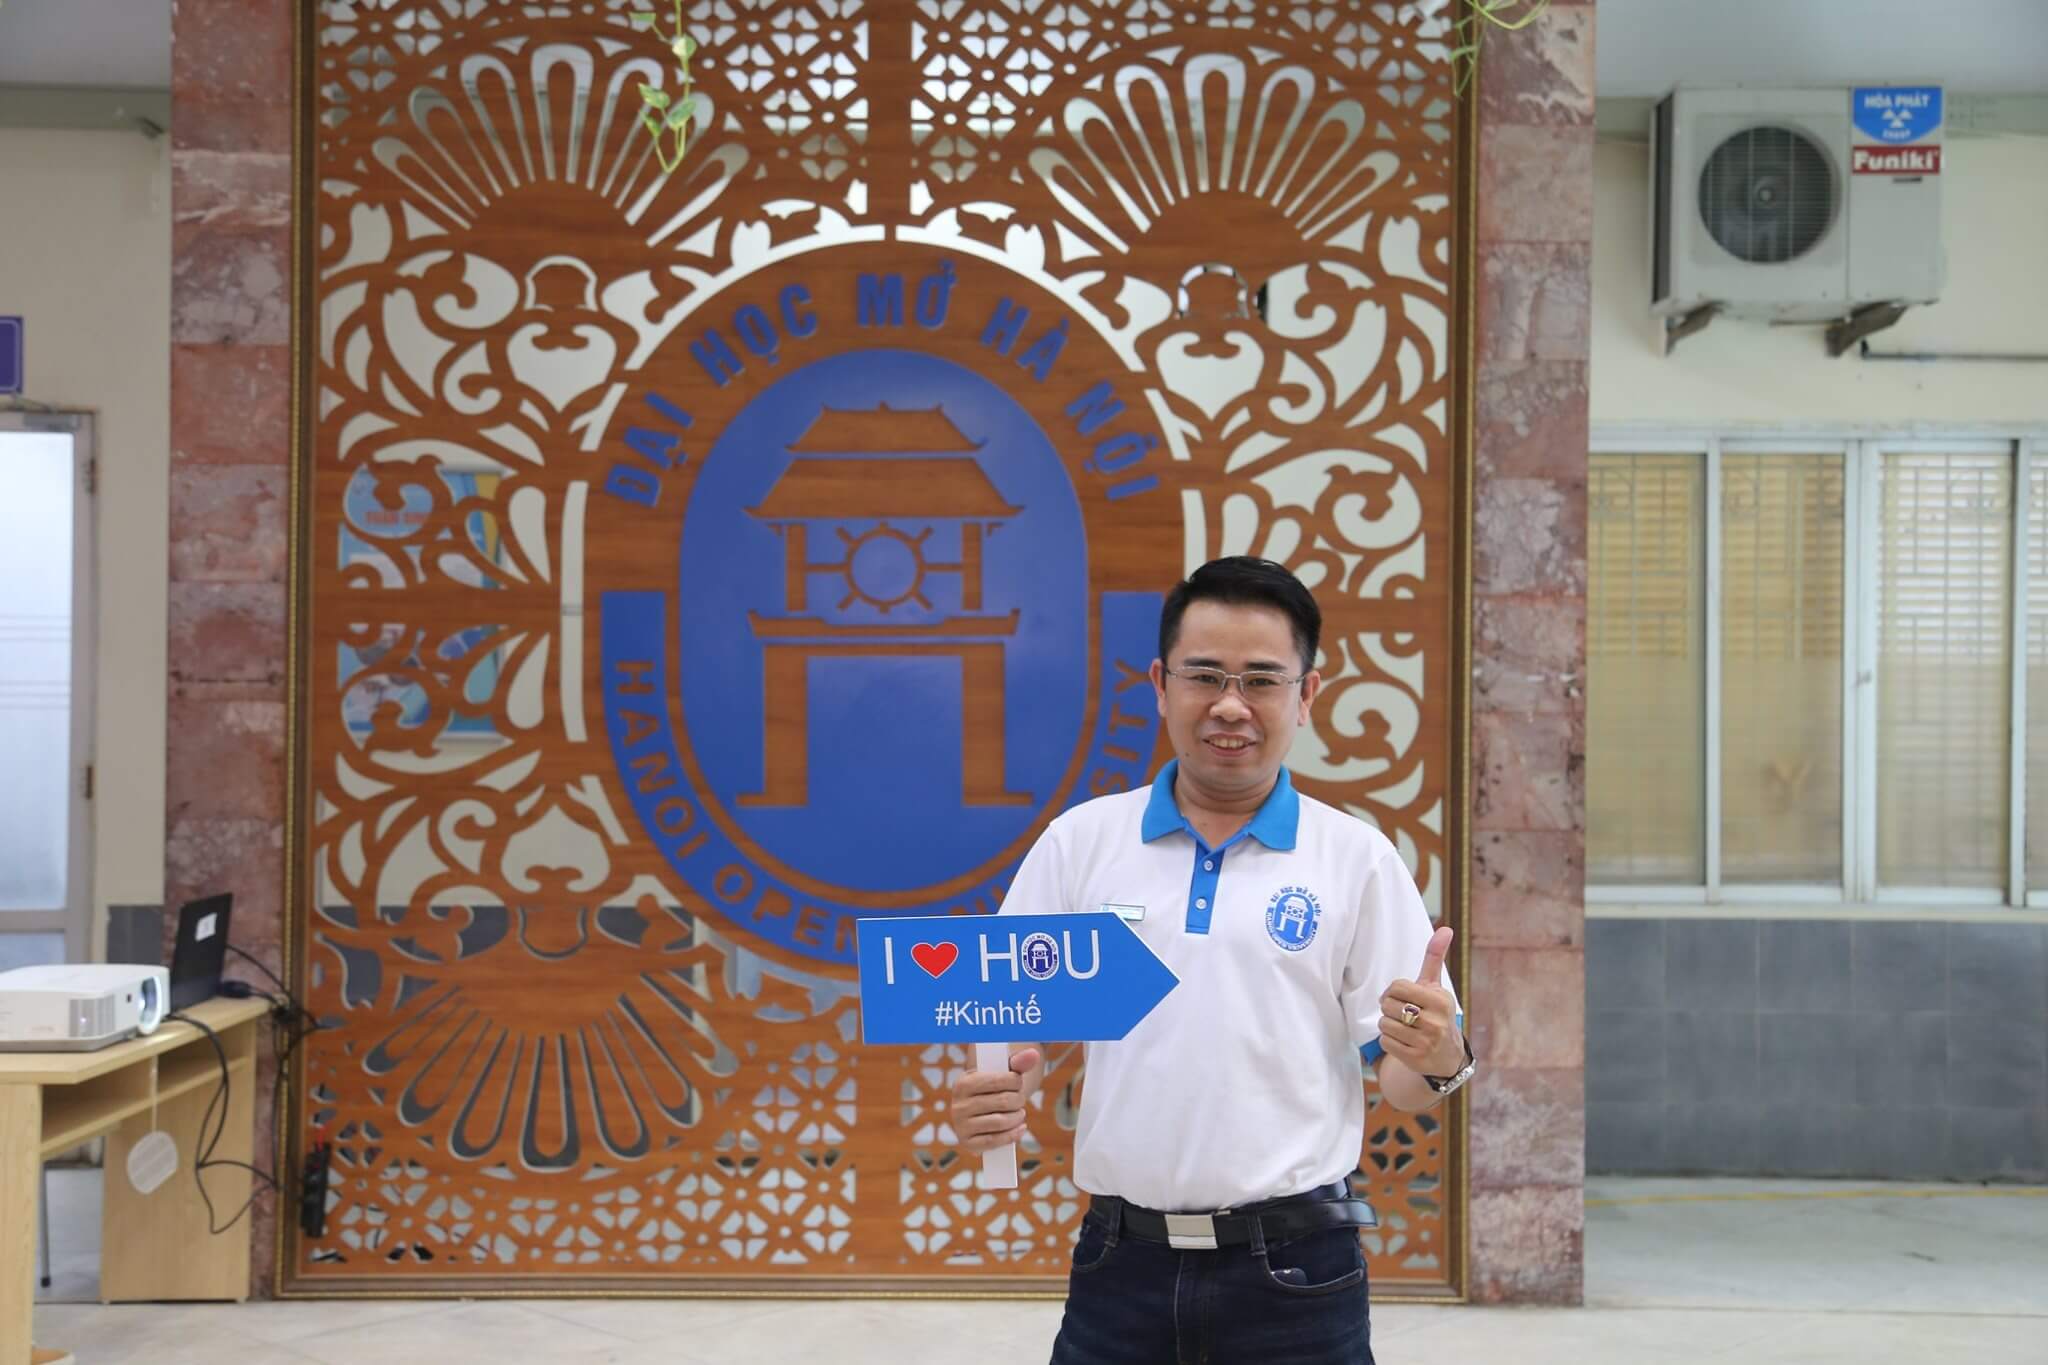 Trường Đại học Mở Hà Nội (HOU)